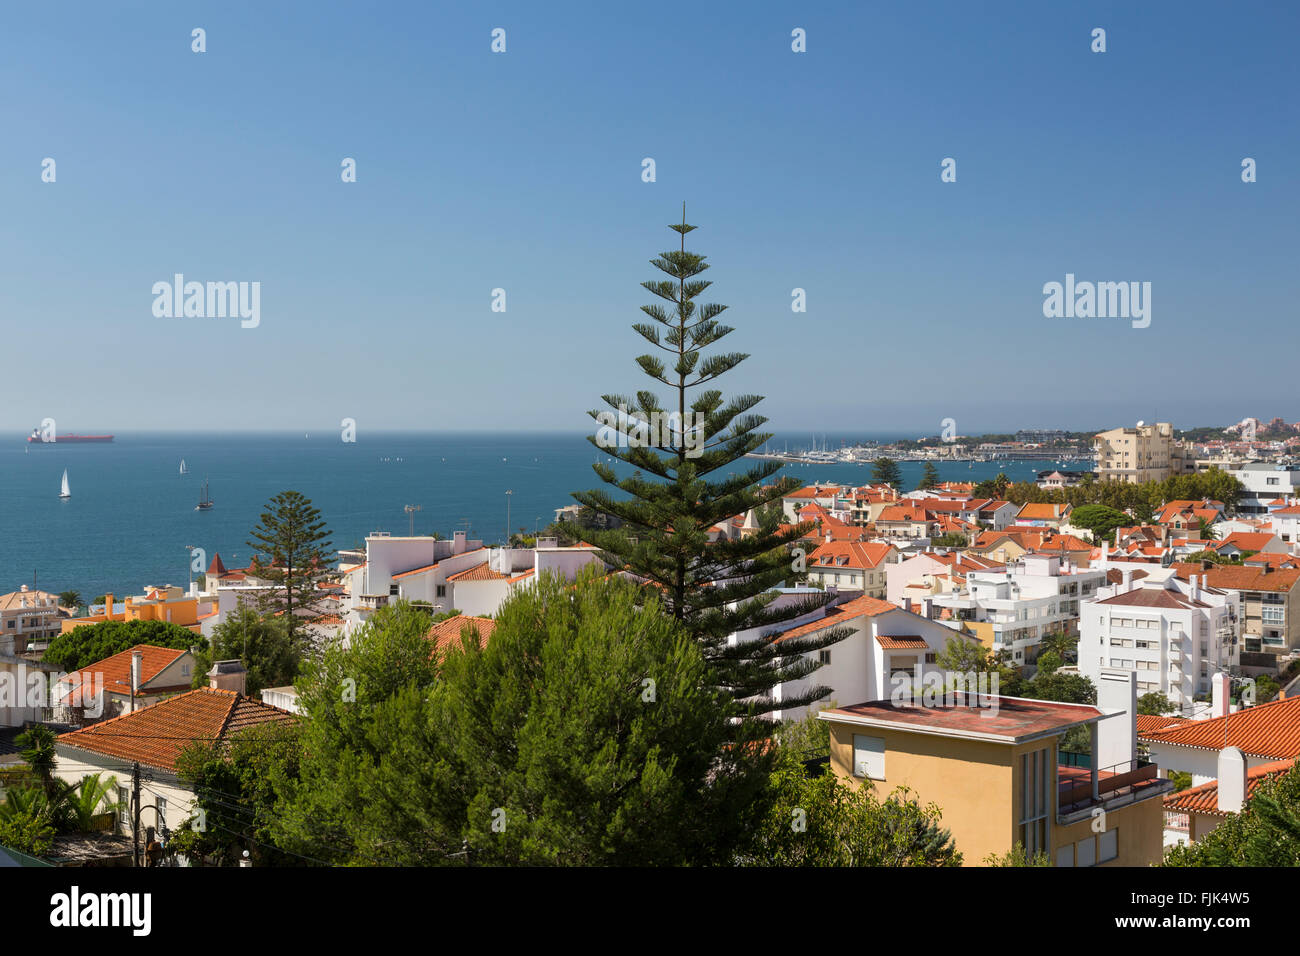 Vue sur l'Océan Atlantique sur les toits de tuile rouge, dans le quartier ville côtière d'Estoril, Portugal, connue comme la Riviera portugaise Banque D'Images